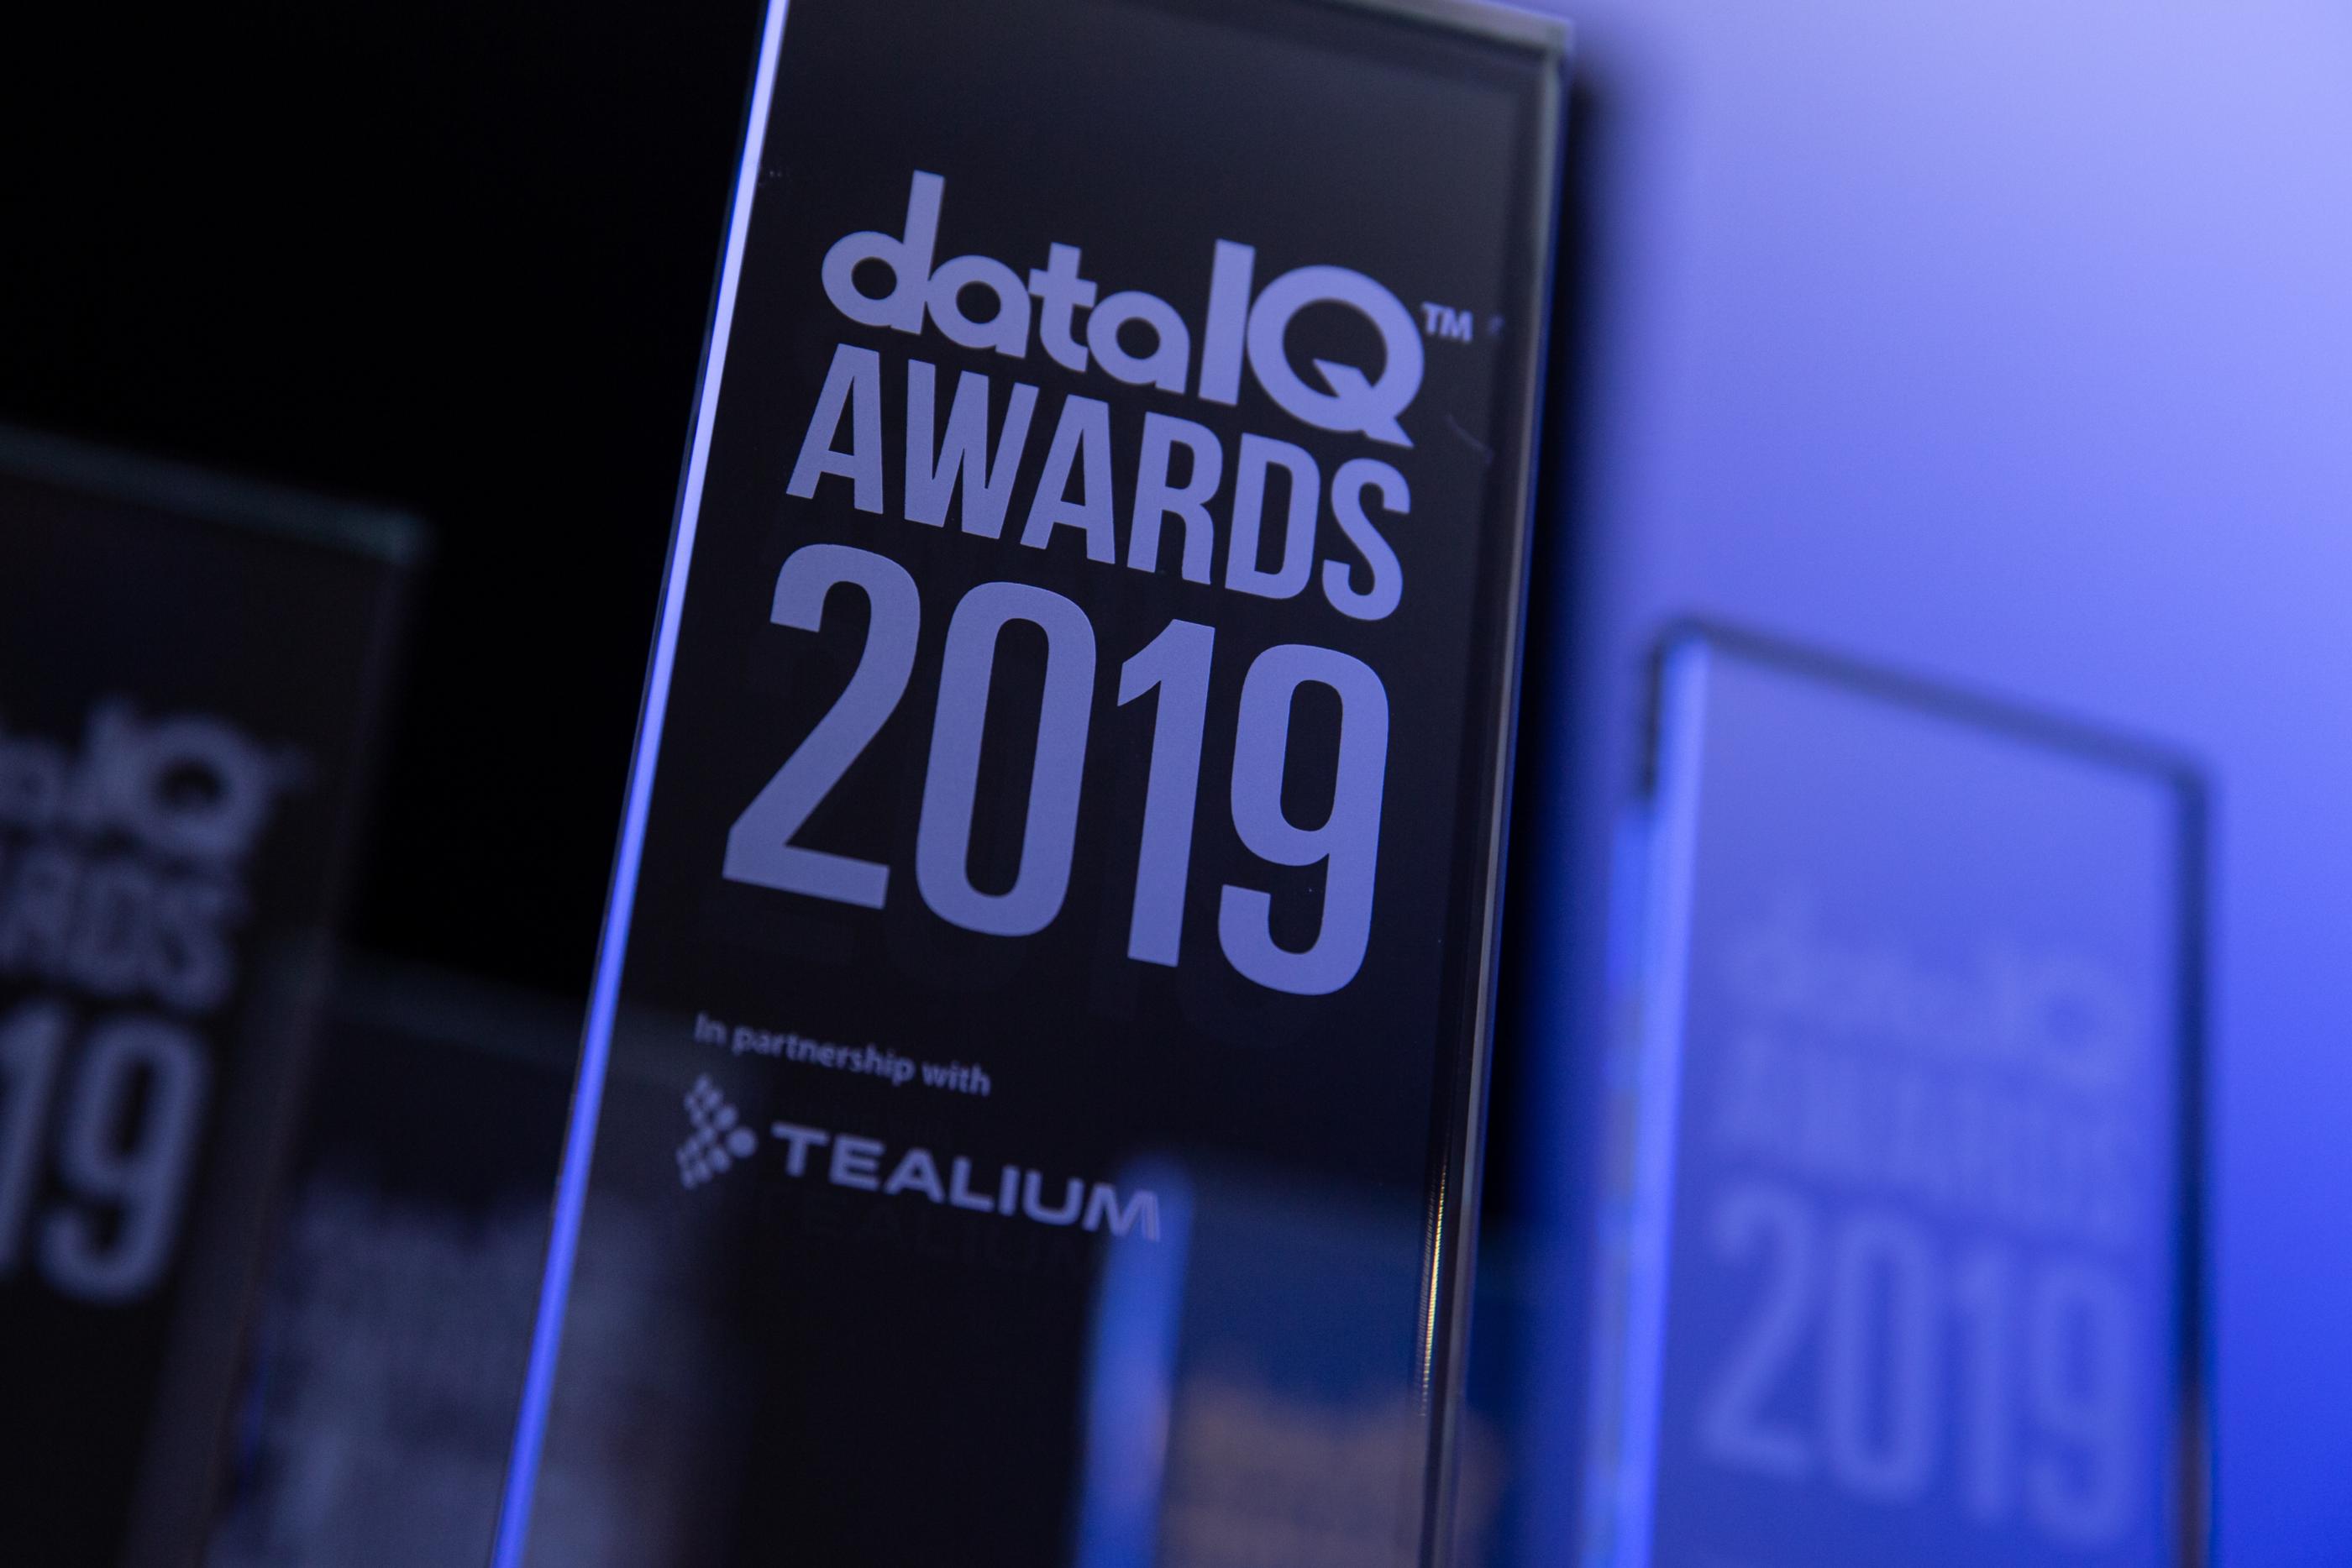 DataIQ Awards 2019